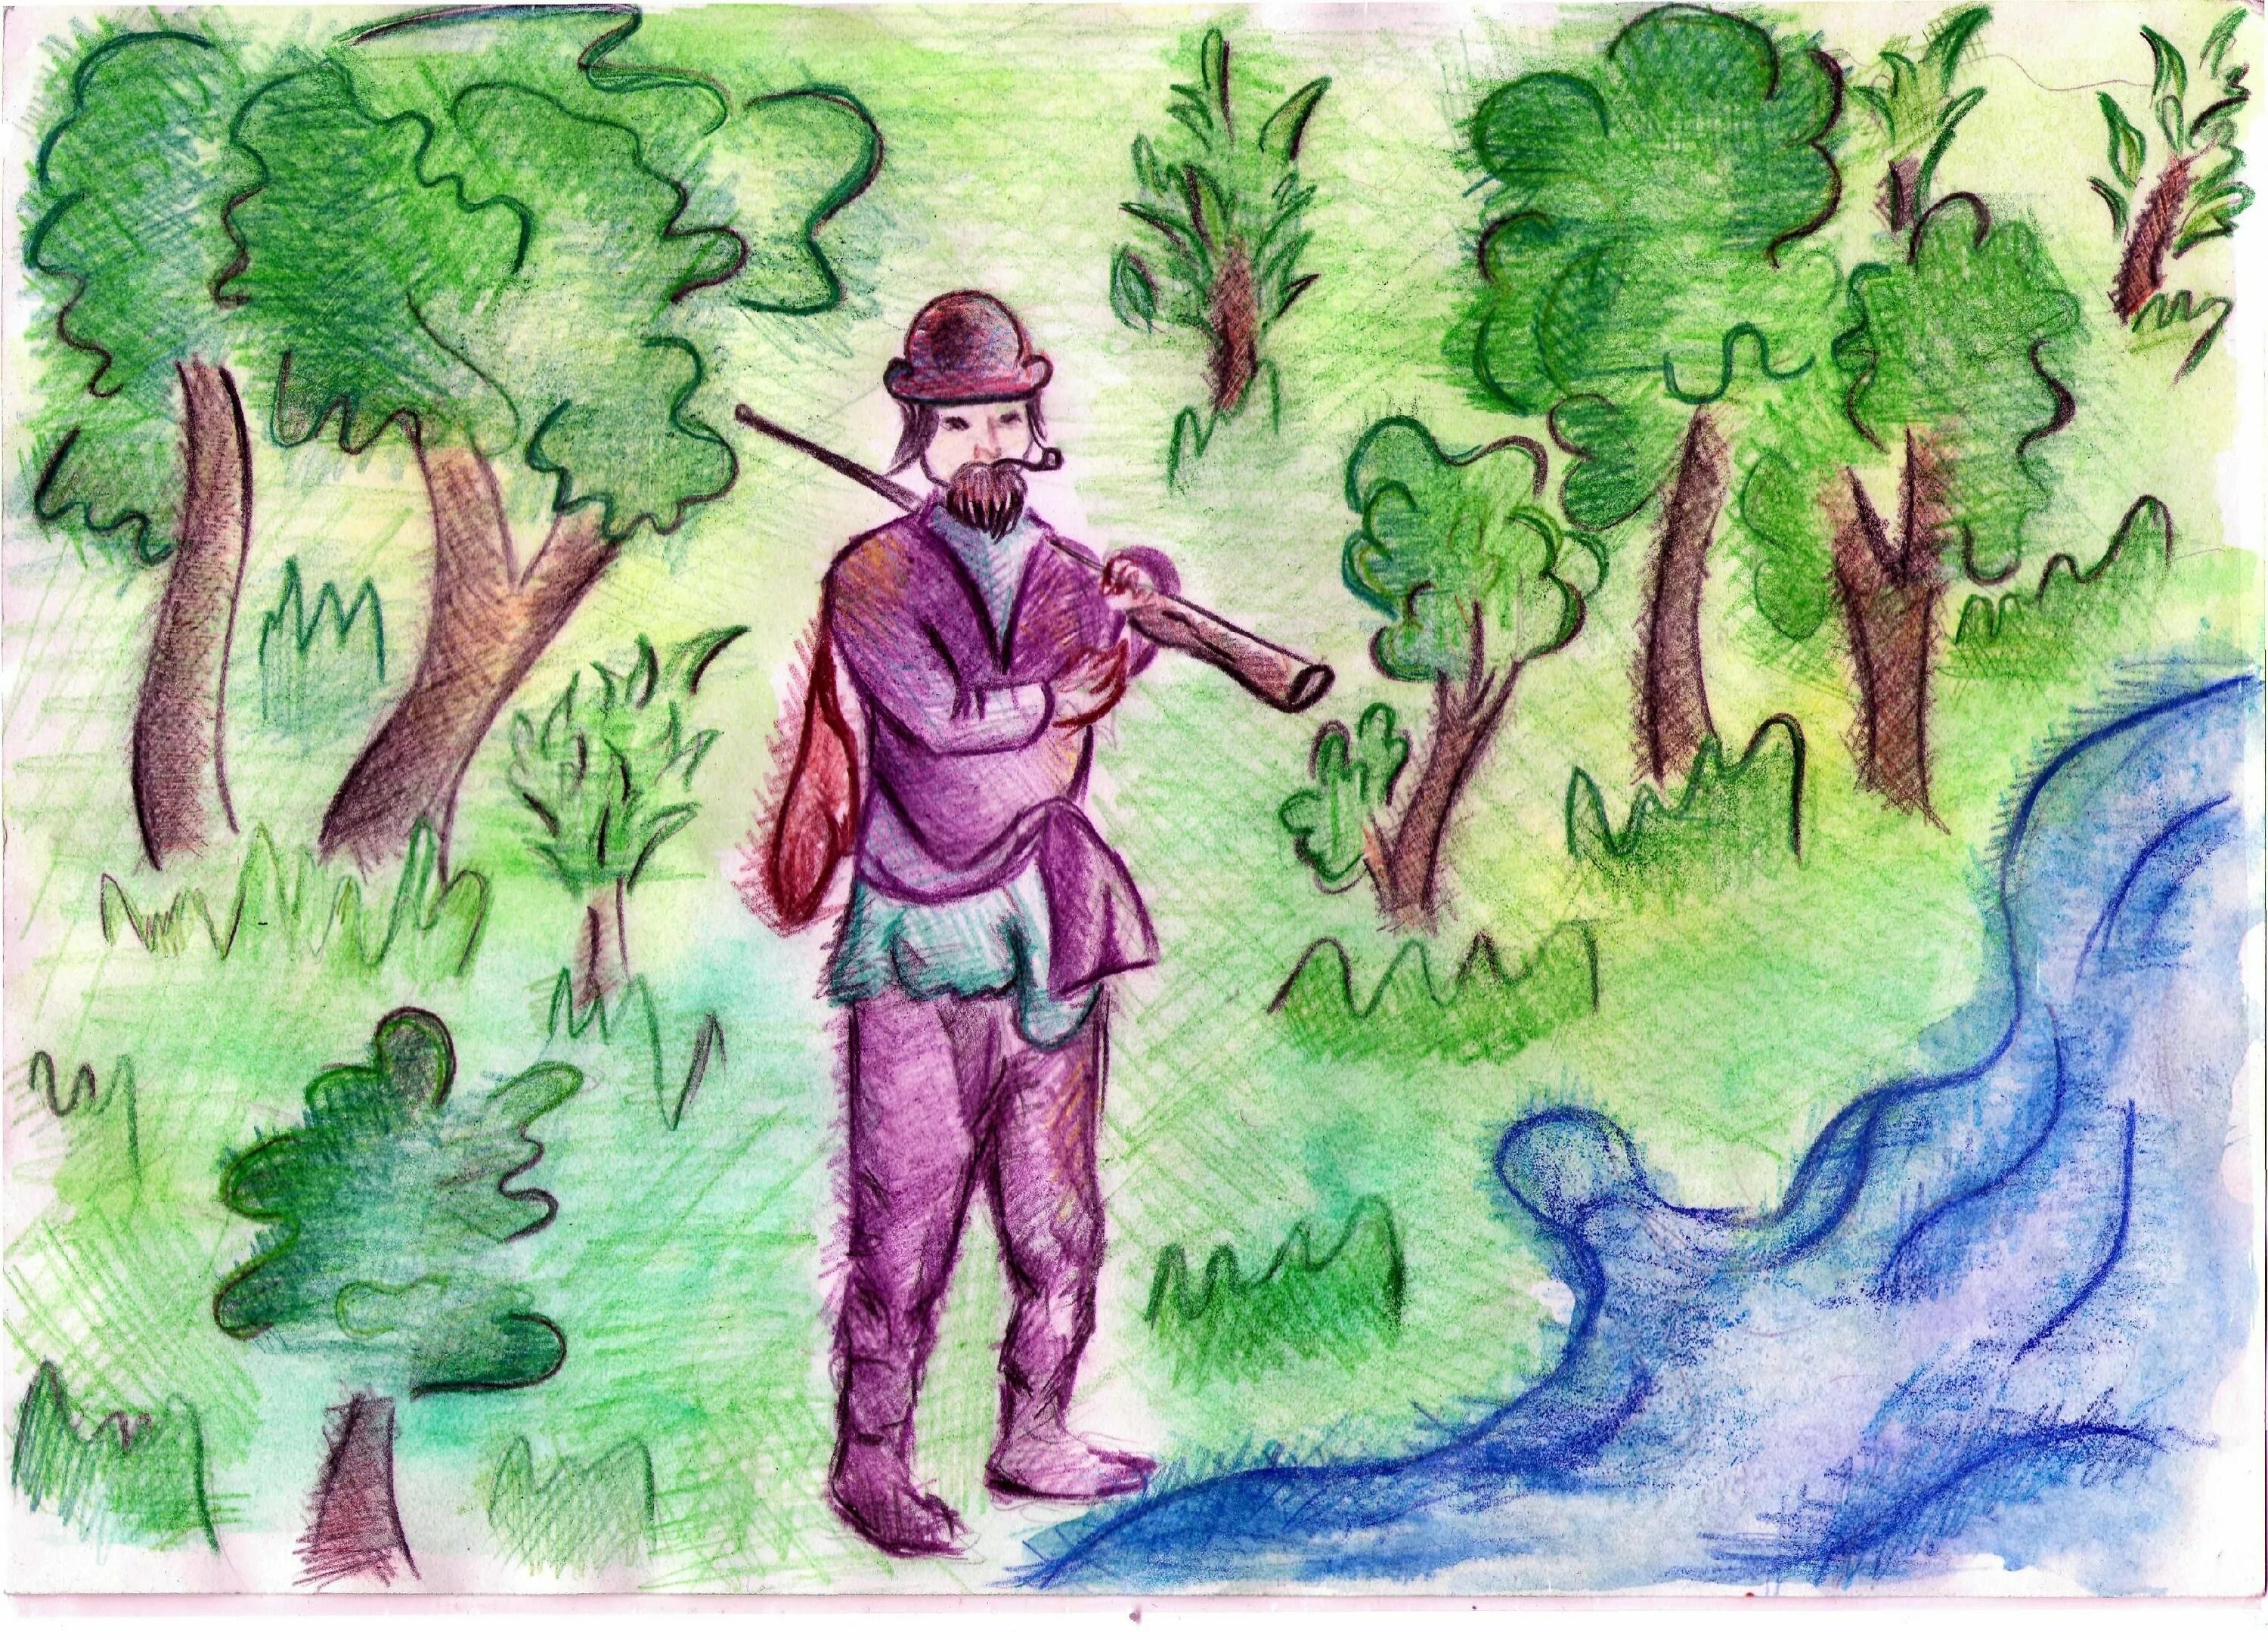 Рисунок по литературе васюткино озеро. Иллюстрация к рассказу Маттео Фальконе. Иллюстрация к рассказу Васюткино озеро. Маттео Фальконе рисунки к произведению. Иллюстрация Васюткино озеро 5 класс.